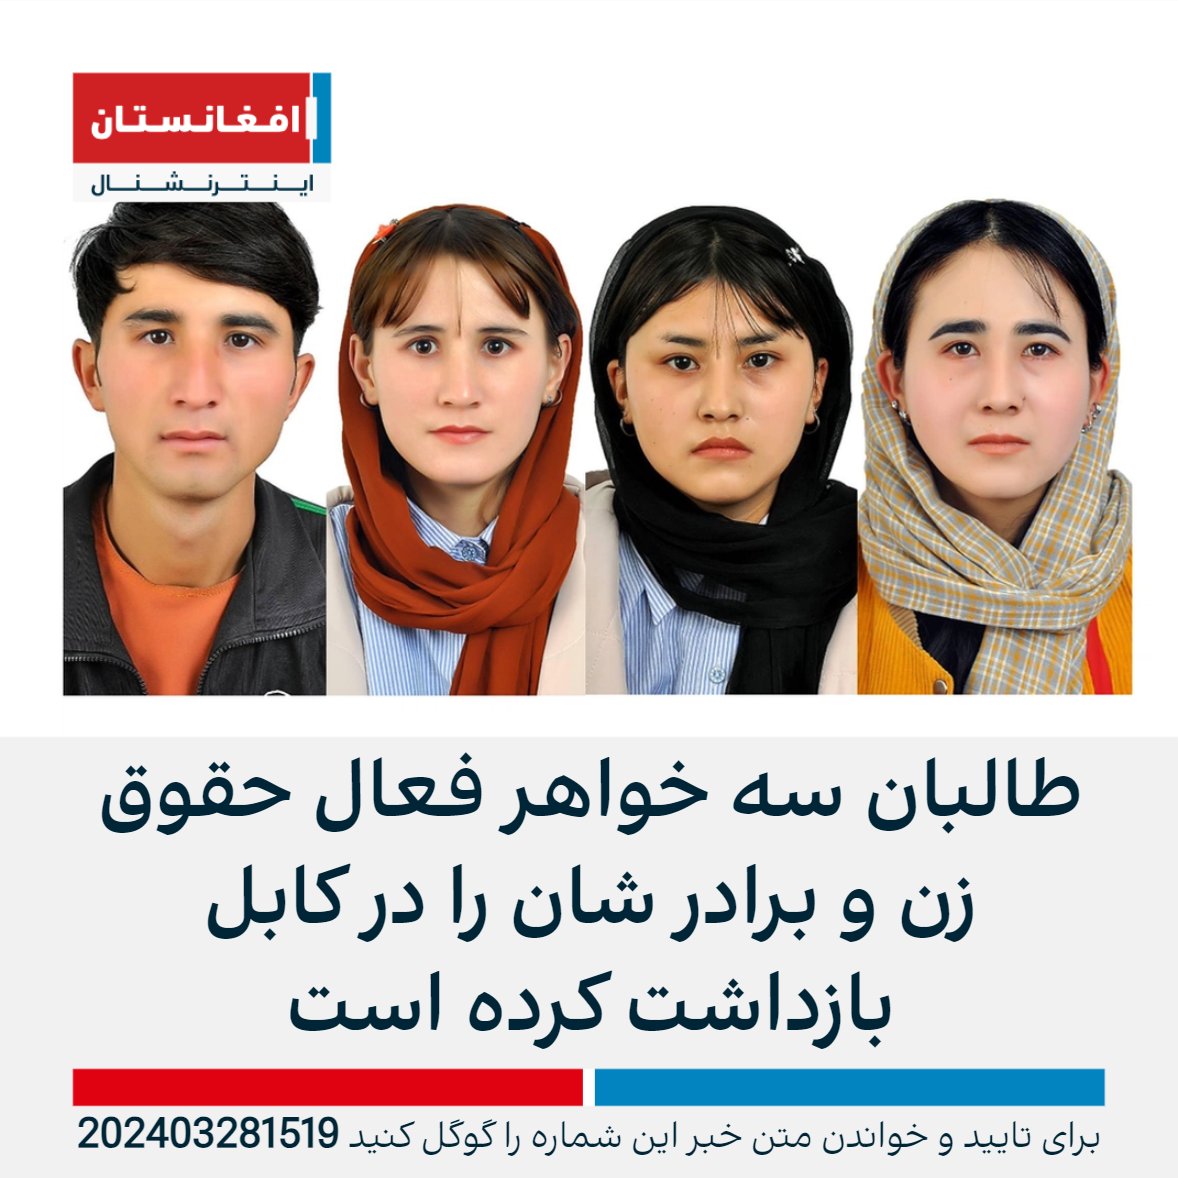 منابع آگاه به افغانستان اینترنشنال گفتند که طالبان سه خواهر فعال حقوق زنان و برادر آنها را در منطقه دشت برچی در غرب کابل بازداشت کرده و به جای نامعلومی منتقل کرده است. به گفته منابع، این سه خواهر عضو جنبش زنان عدالت خواه افغانستان اند. afintl.com/202403281519